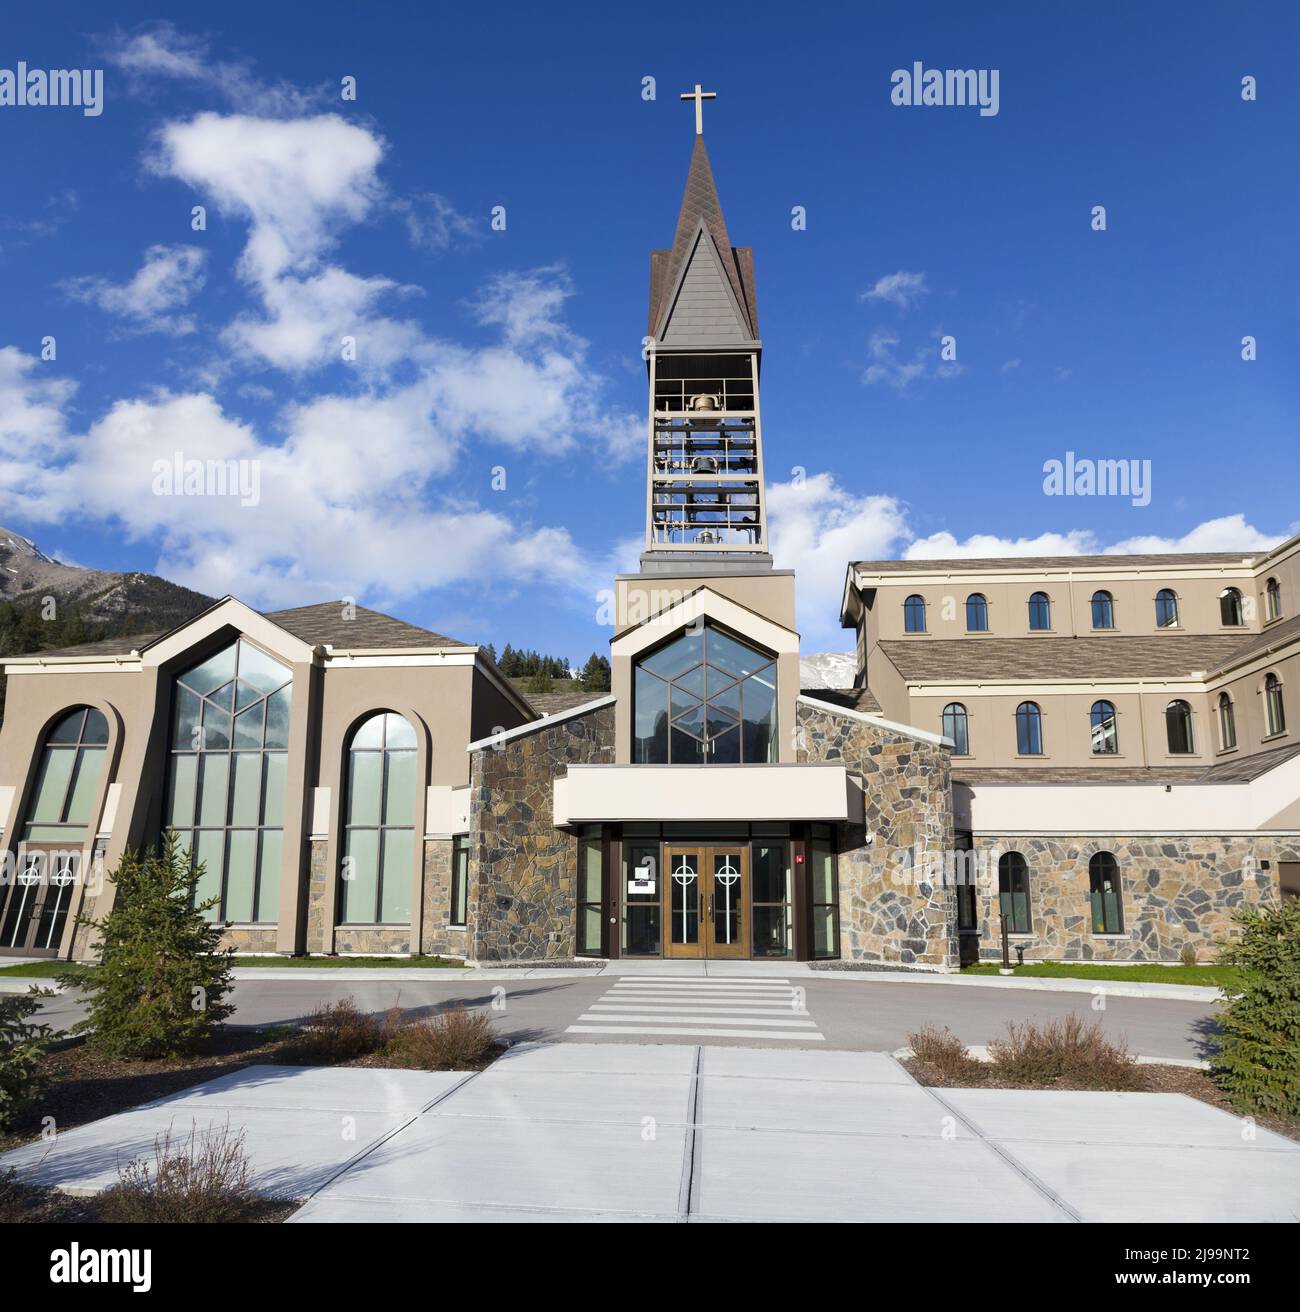 Die Schrein-Kirche unserer Lieben Frau der Rockies. Außenansicht des modernen römisch-katholischen Kirchengebäudes in der Stadt Canmore, Alberta, den kanadischen Rocky Mountains Stockfoto